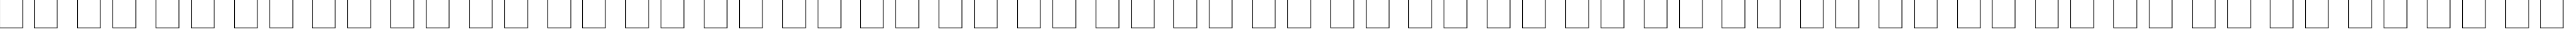 Пример написания русского алфавита шрифтом Gill Sans MT Ext Condensed Bold